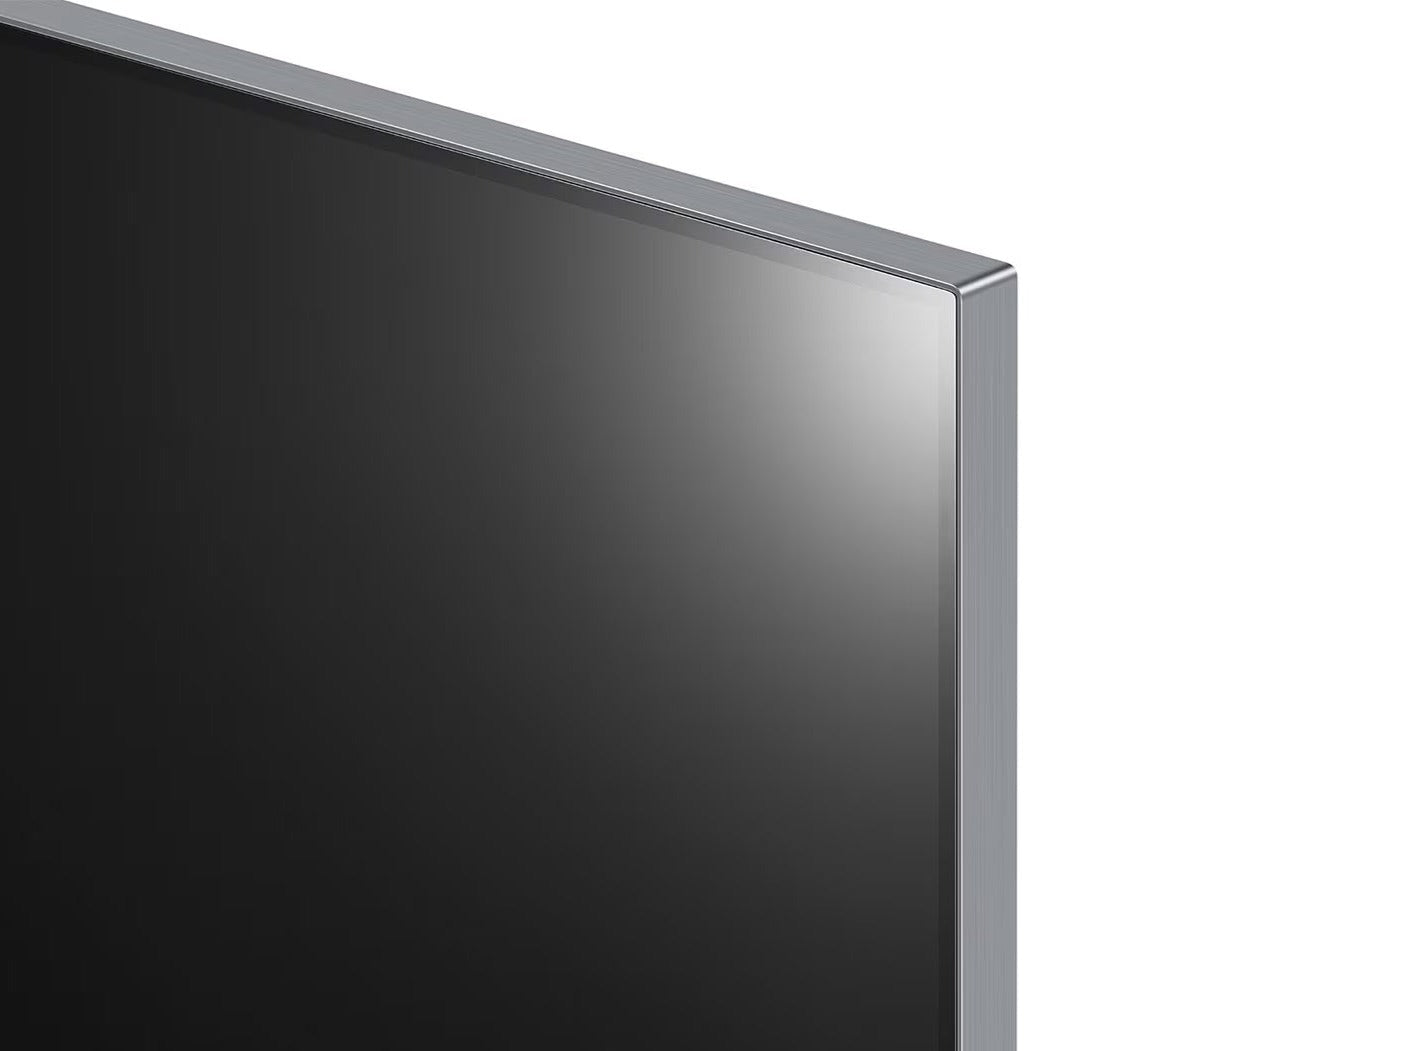 LG 65G2 OLED evo televízió jobb felső keretre ráközelítve.